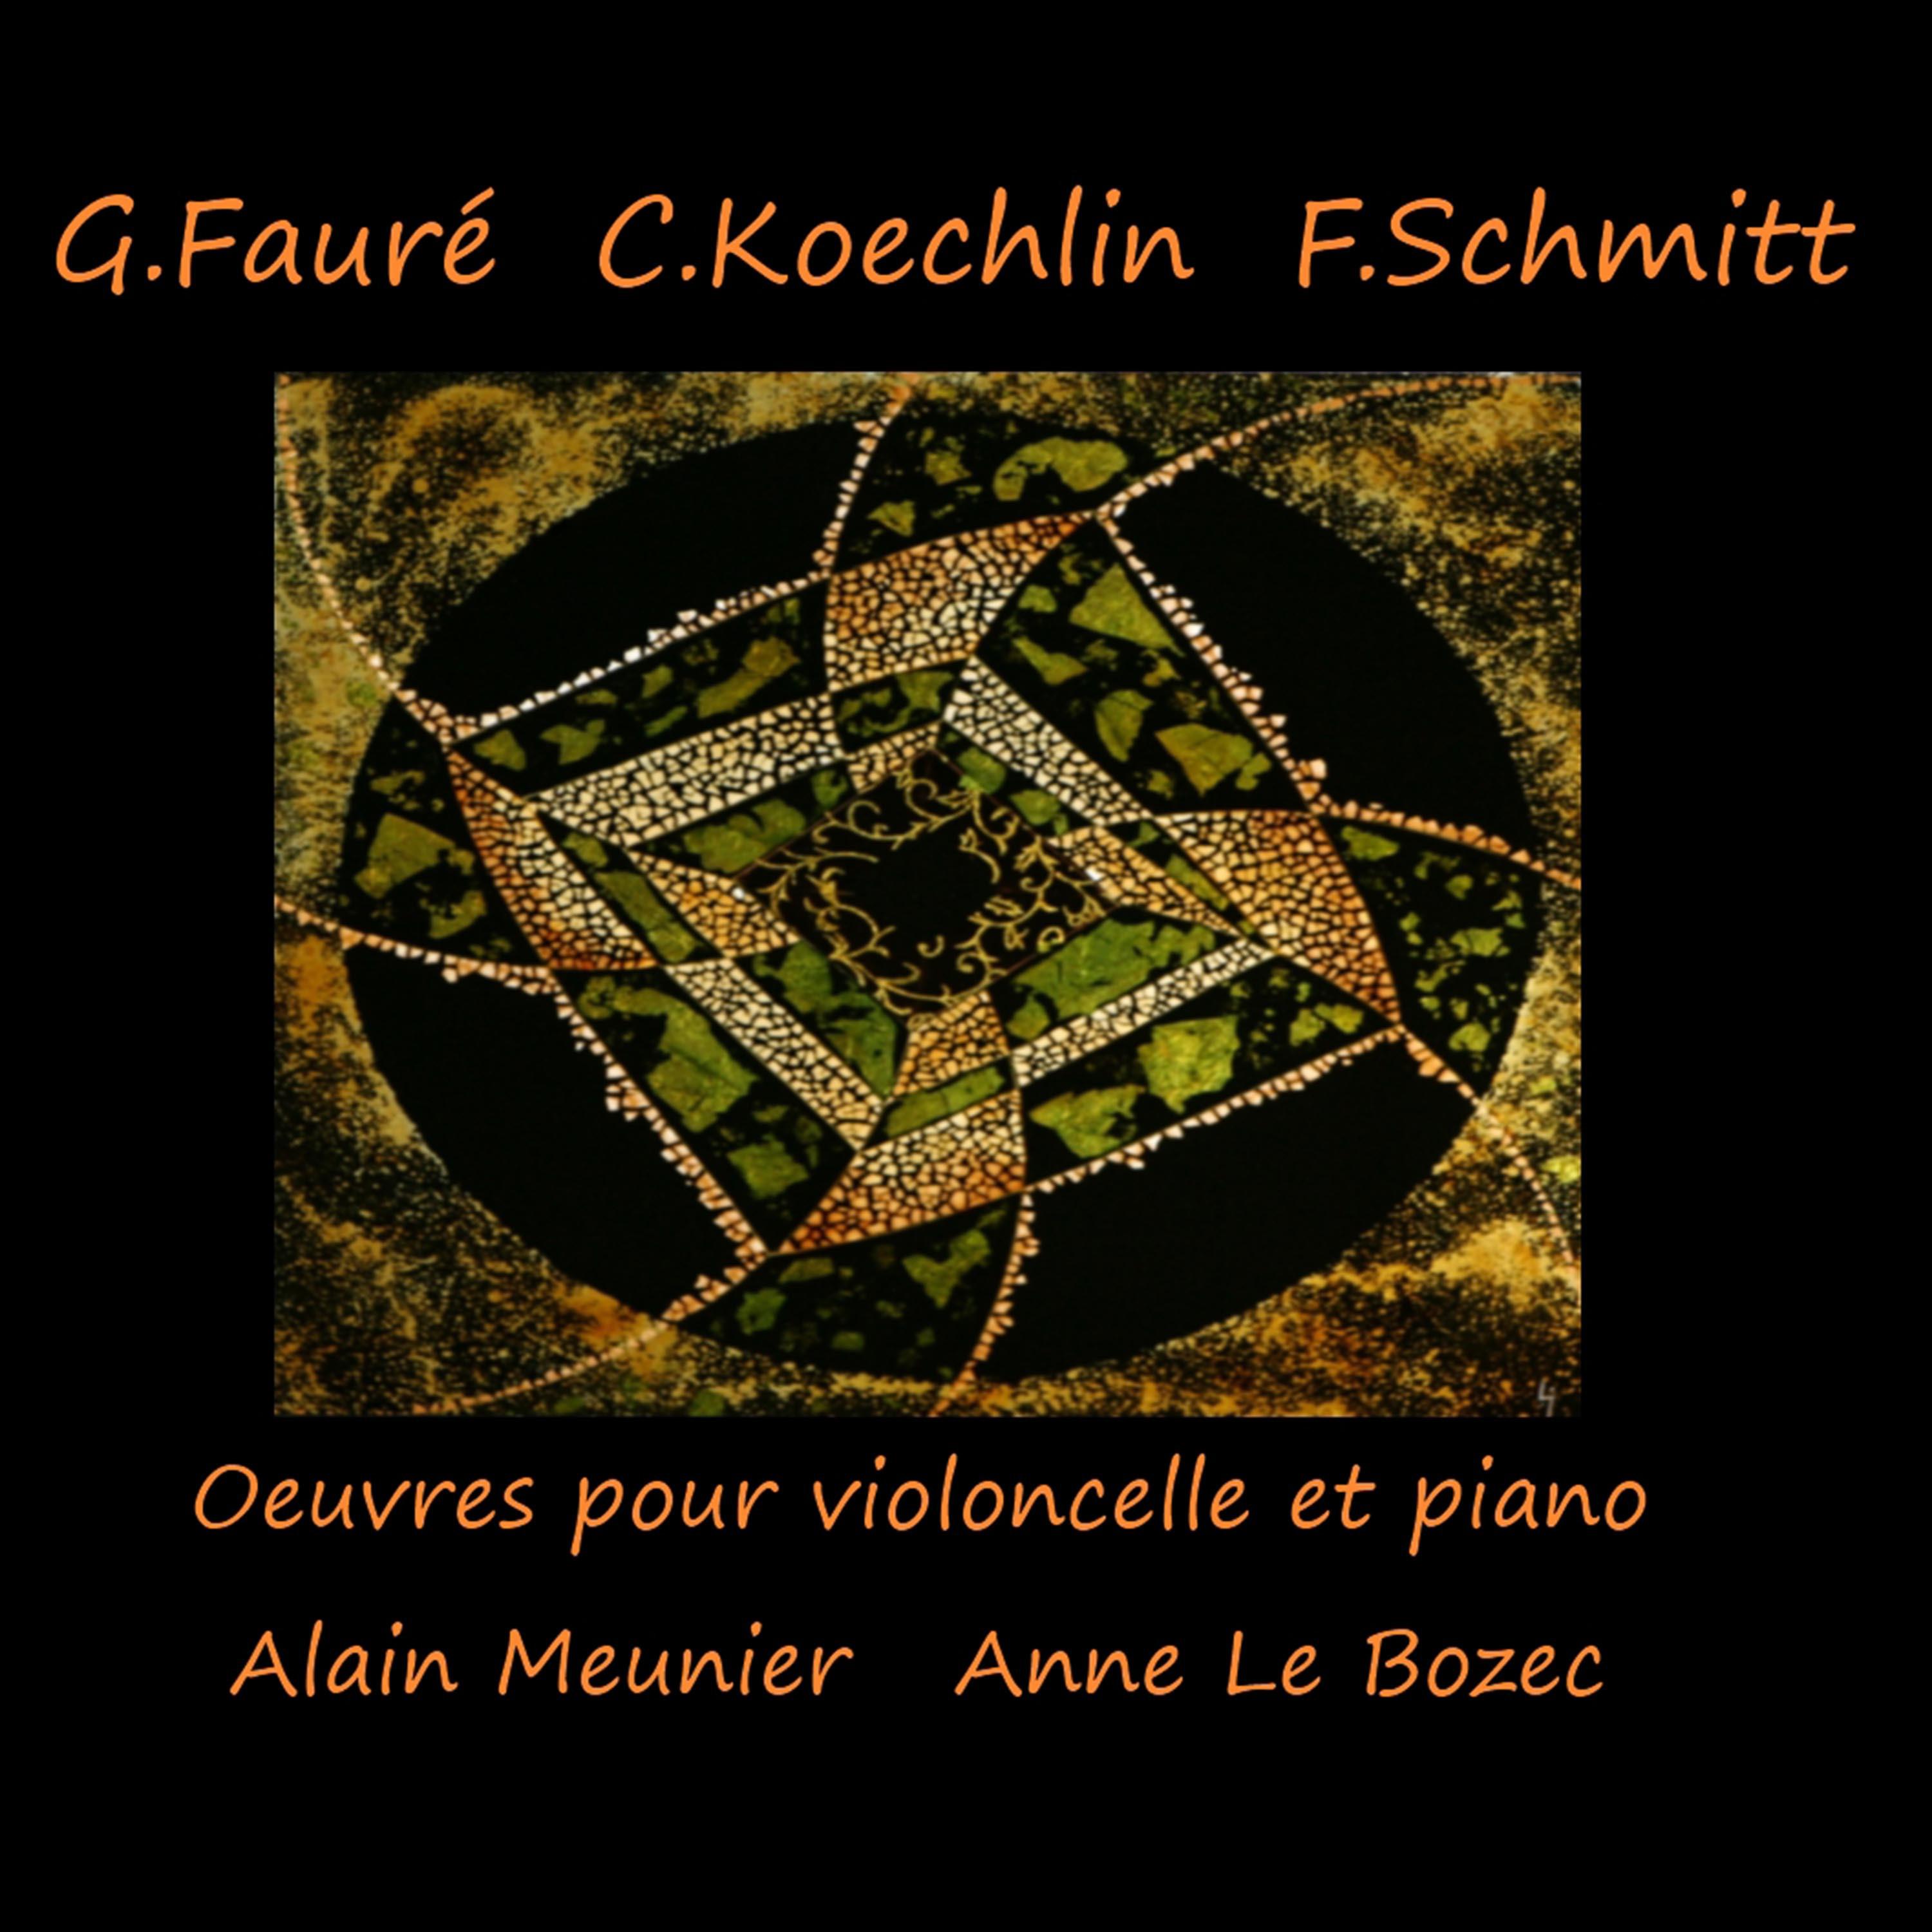 Sonate pour violoncelle et piano No. 1 en Re Mineur, Op. 119: I. Allegro